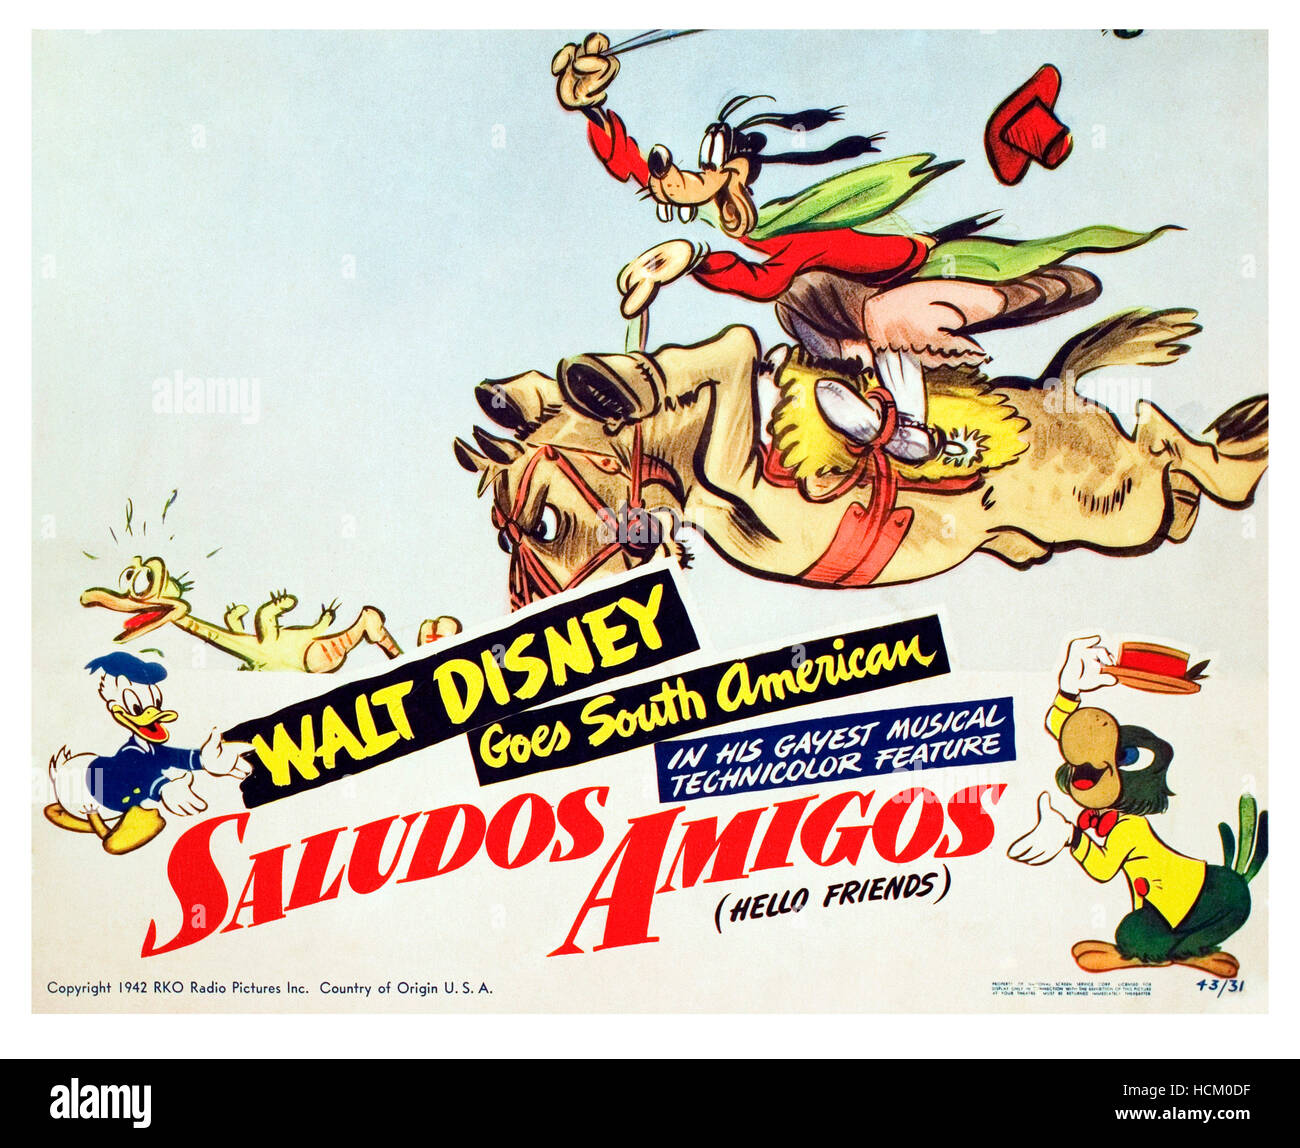 SALUDOS AMIGOS, Donald Duck, Goofy, 1942. Stock Photo